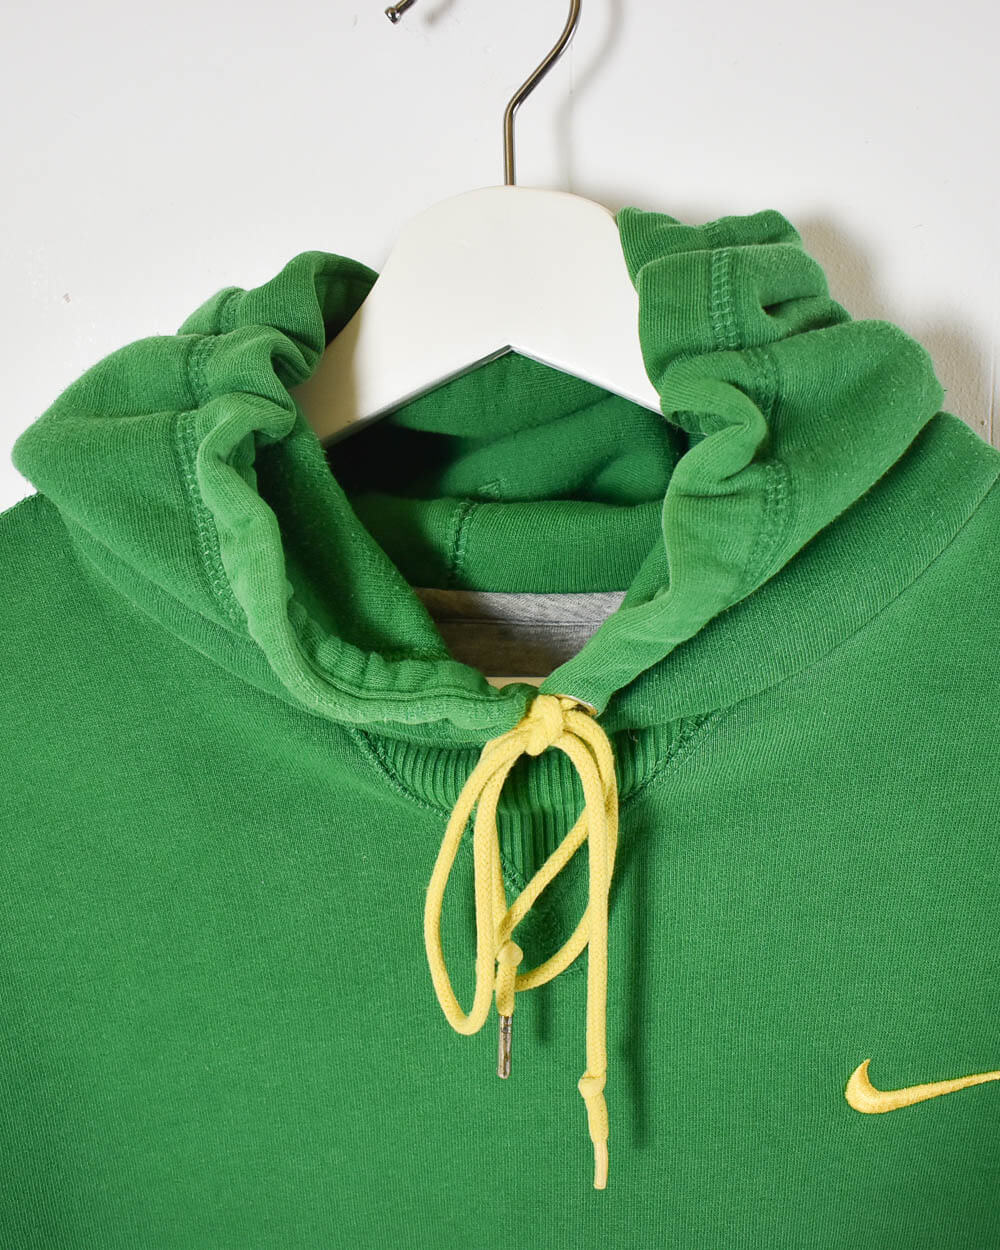 Green Nike Hoodie - Large